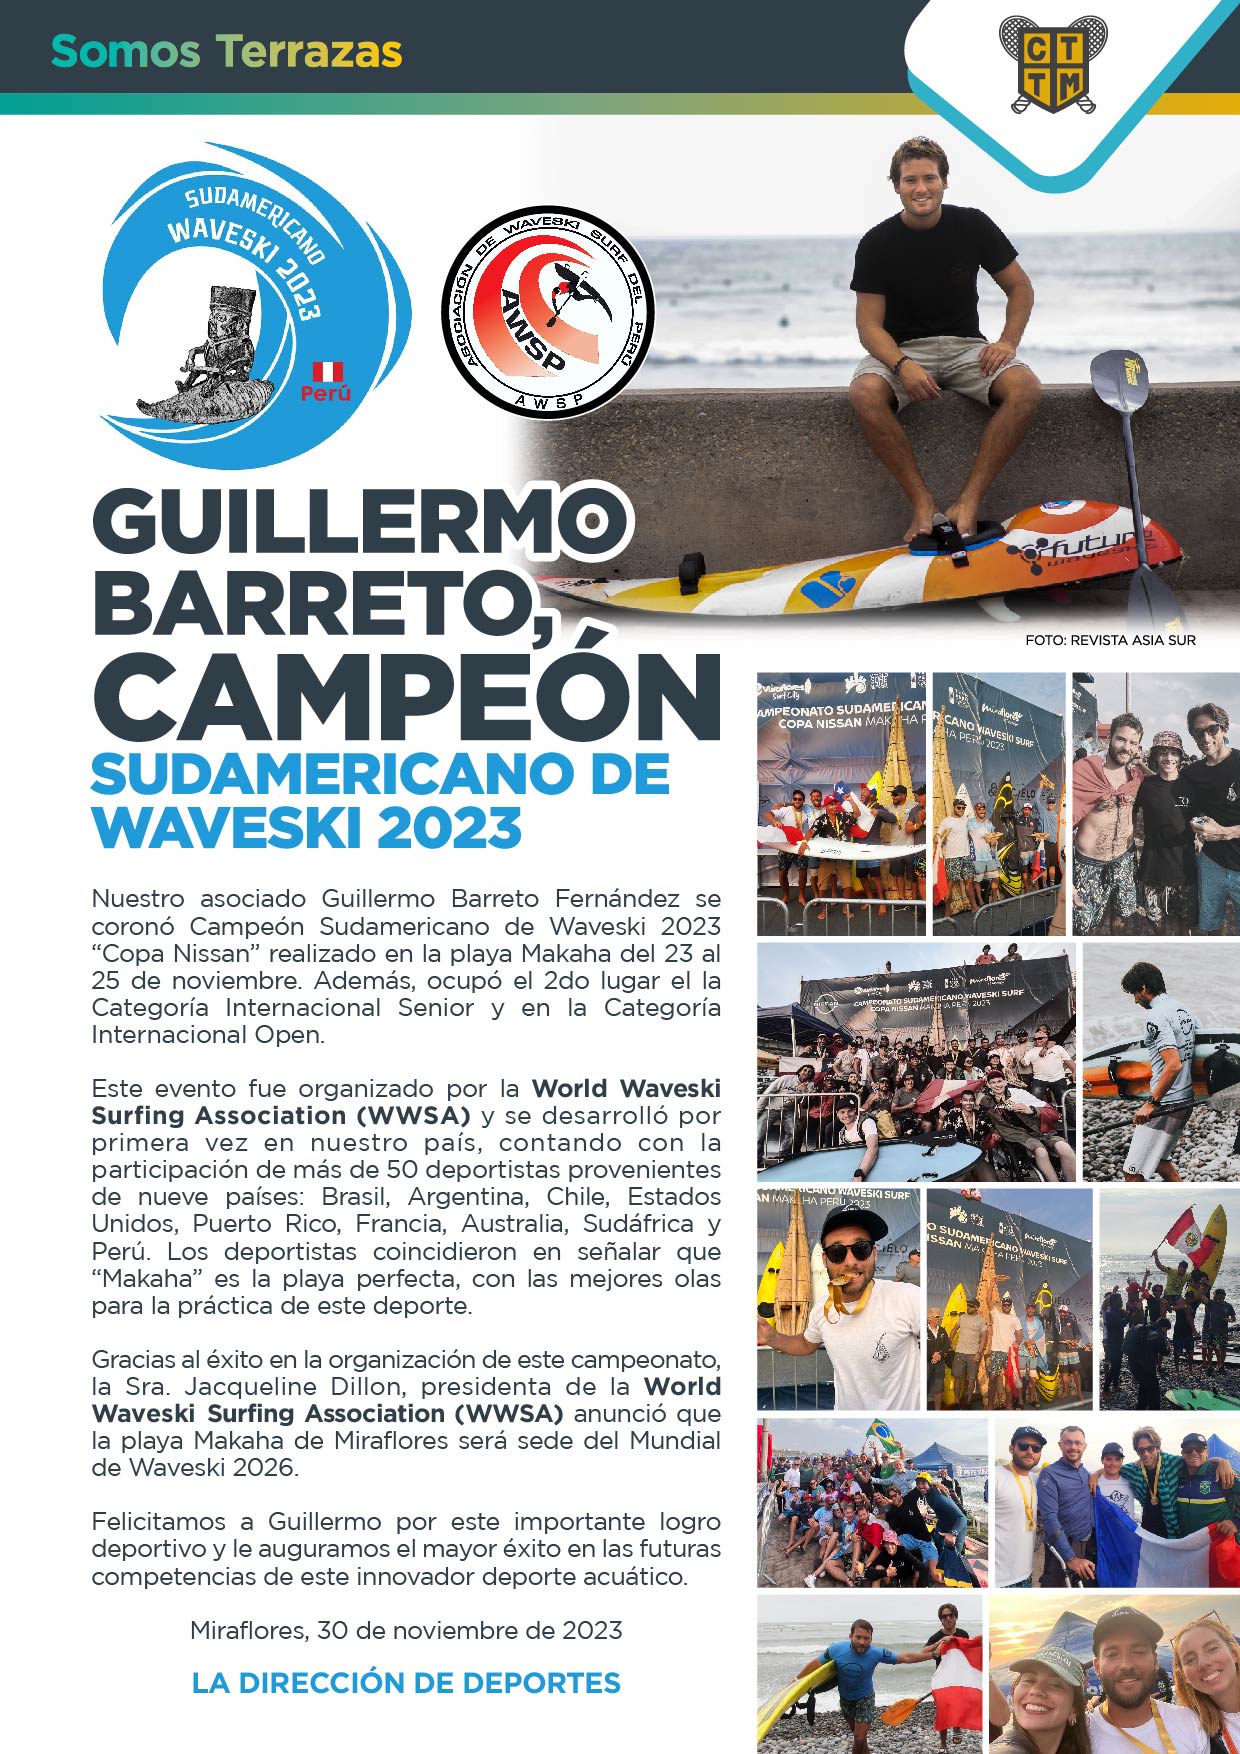 GUILLERMO BARRETO, CAMPEÓN SUDAMERICANO DE WAVESKI 2023